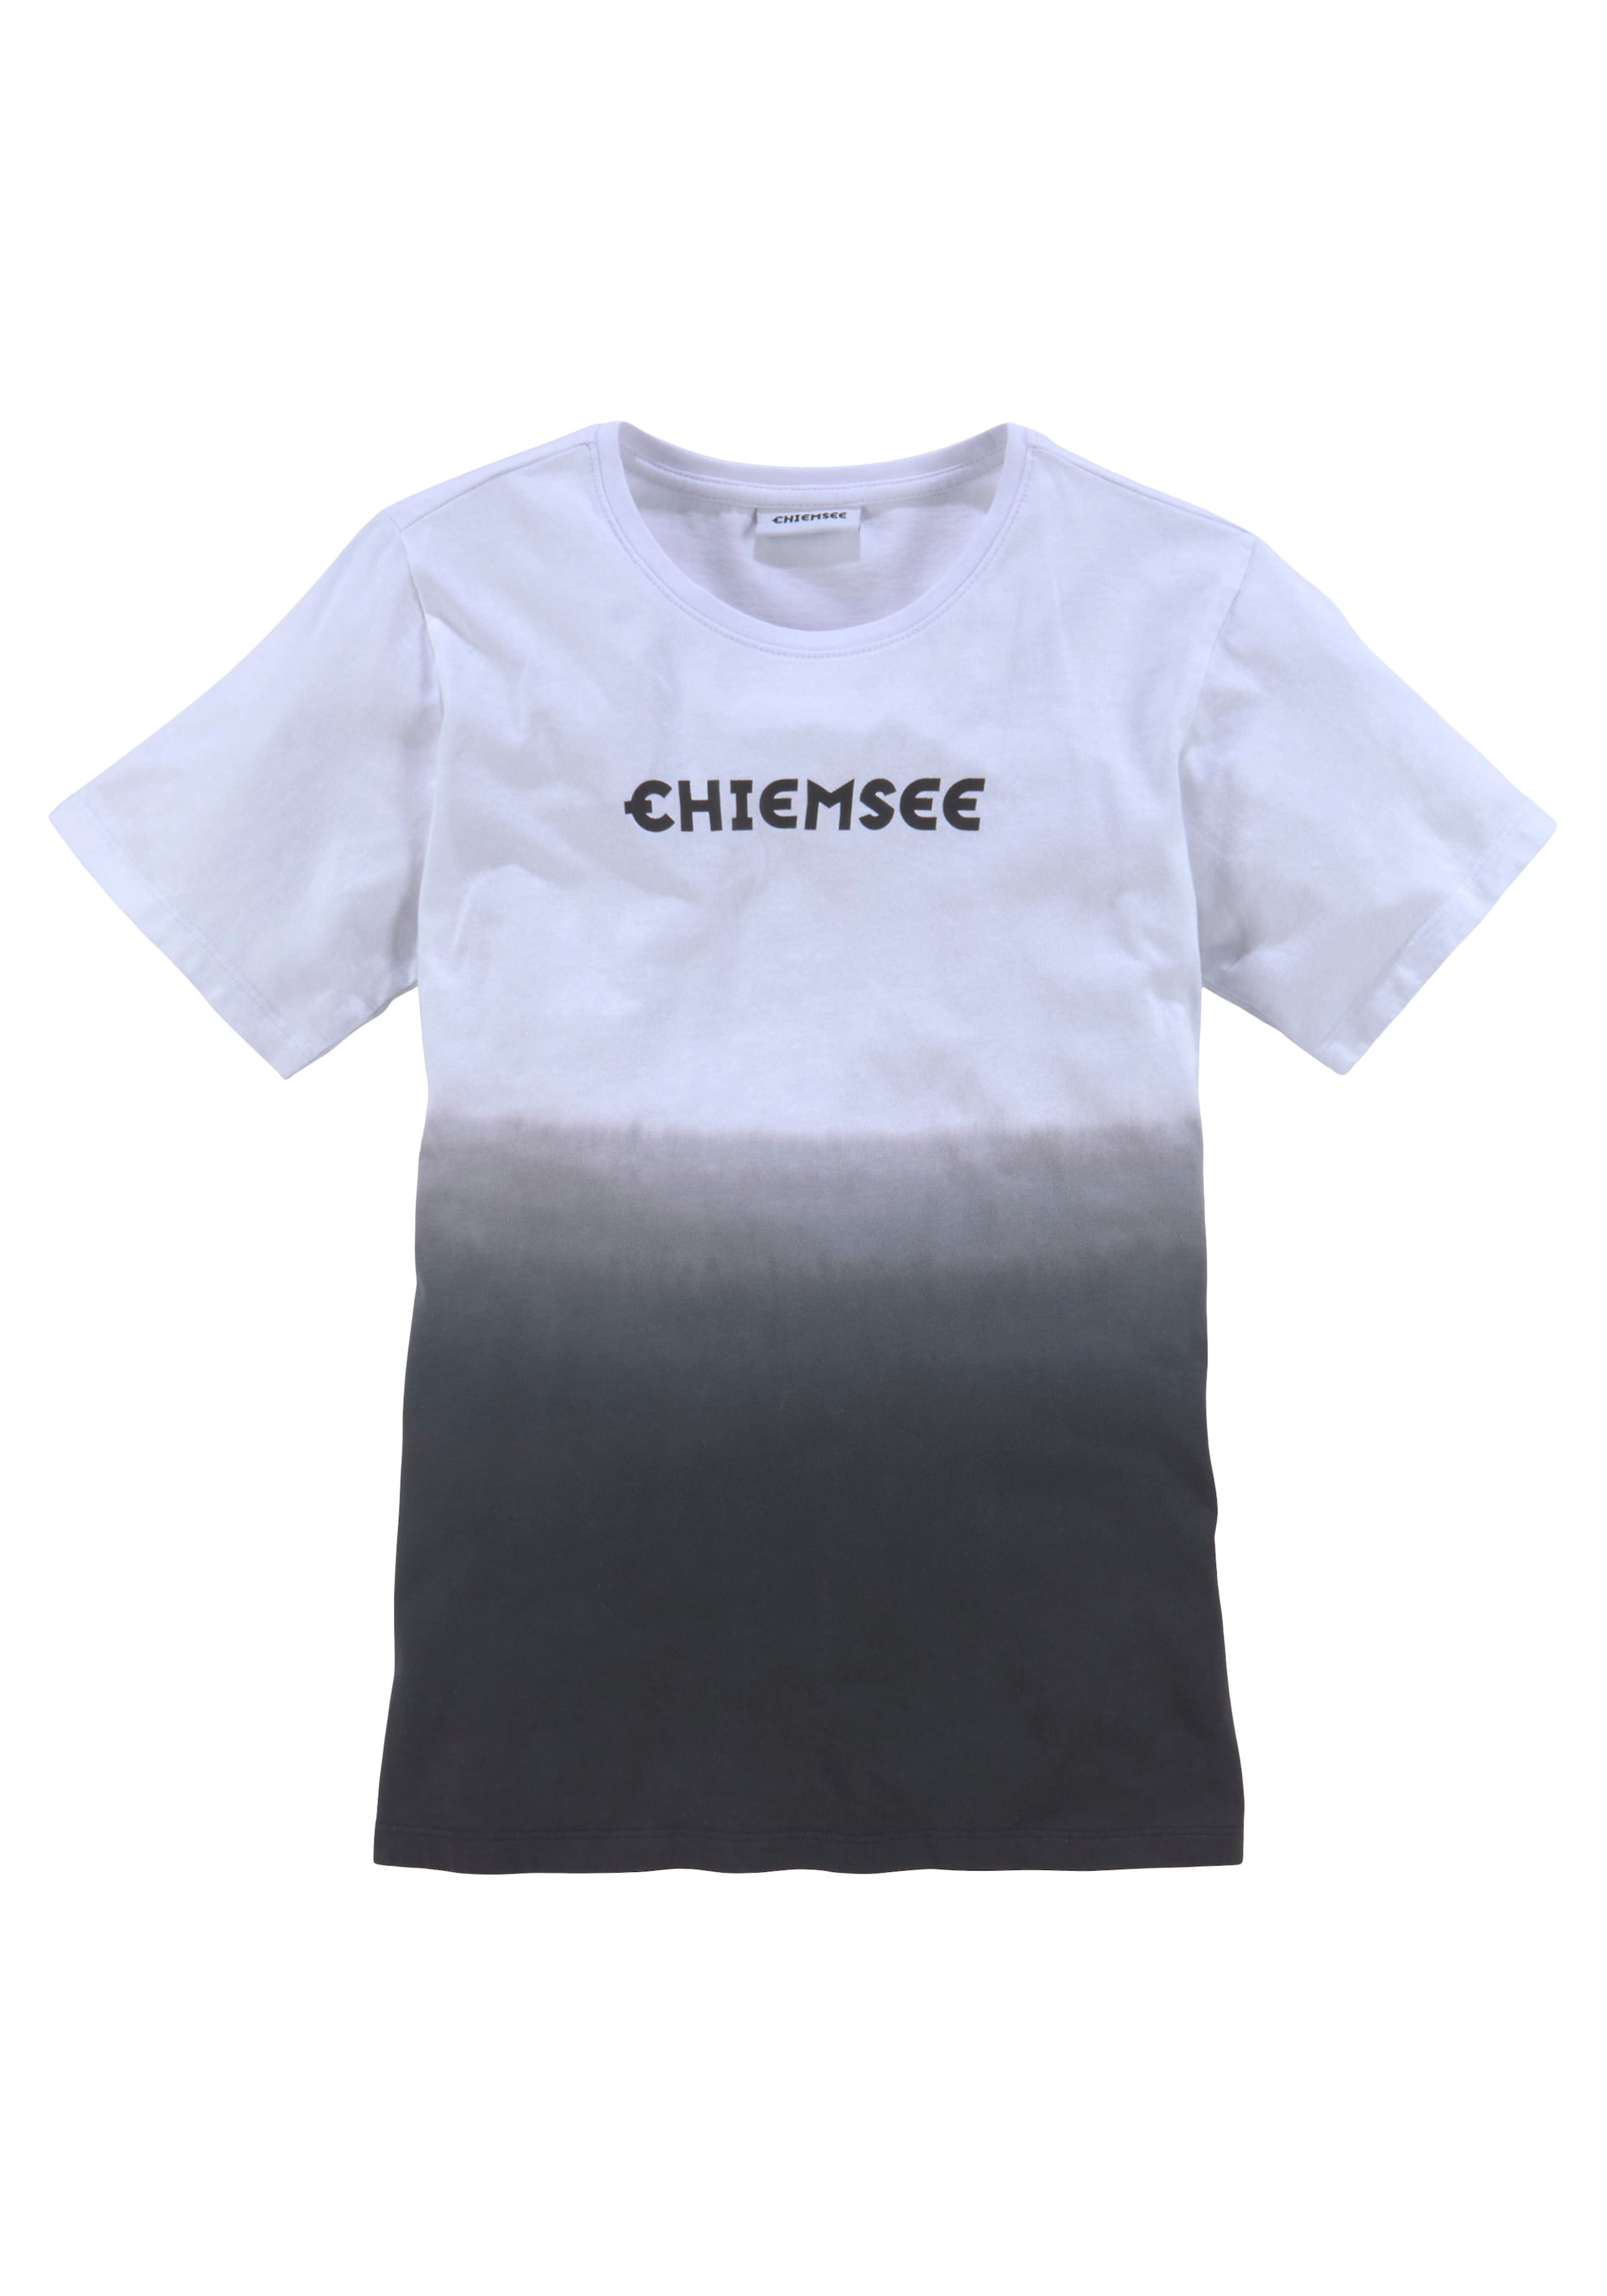 OTTO Farbverlauf« Chiemsee bei T-Shirt »Modischer